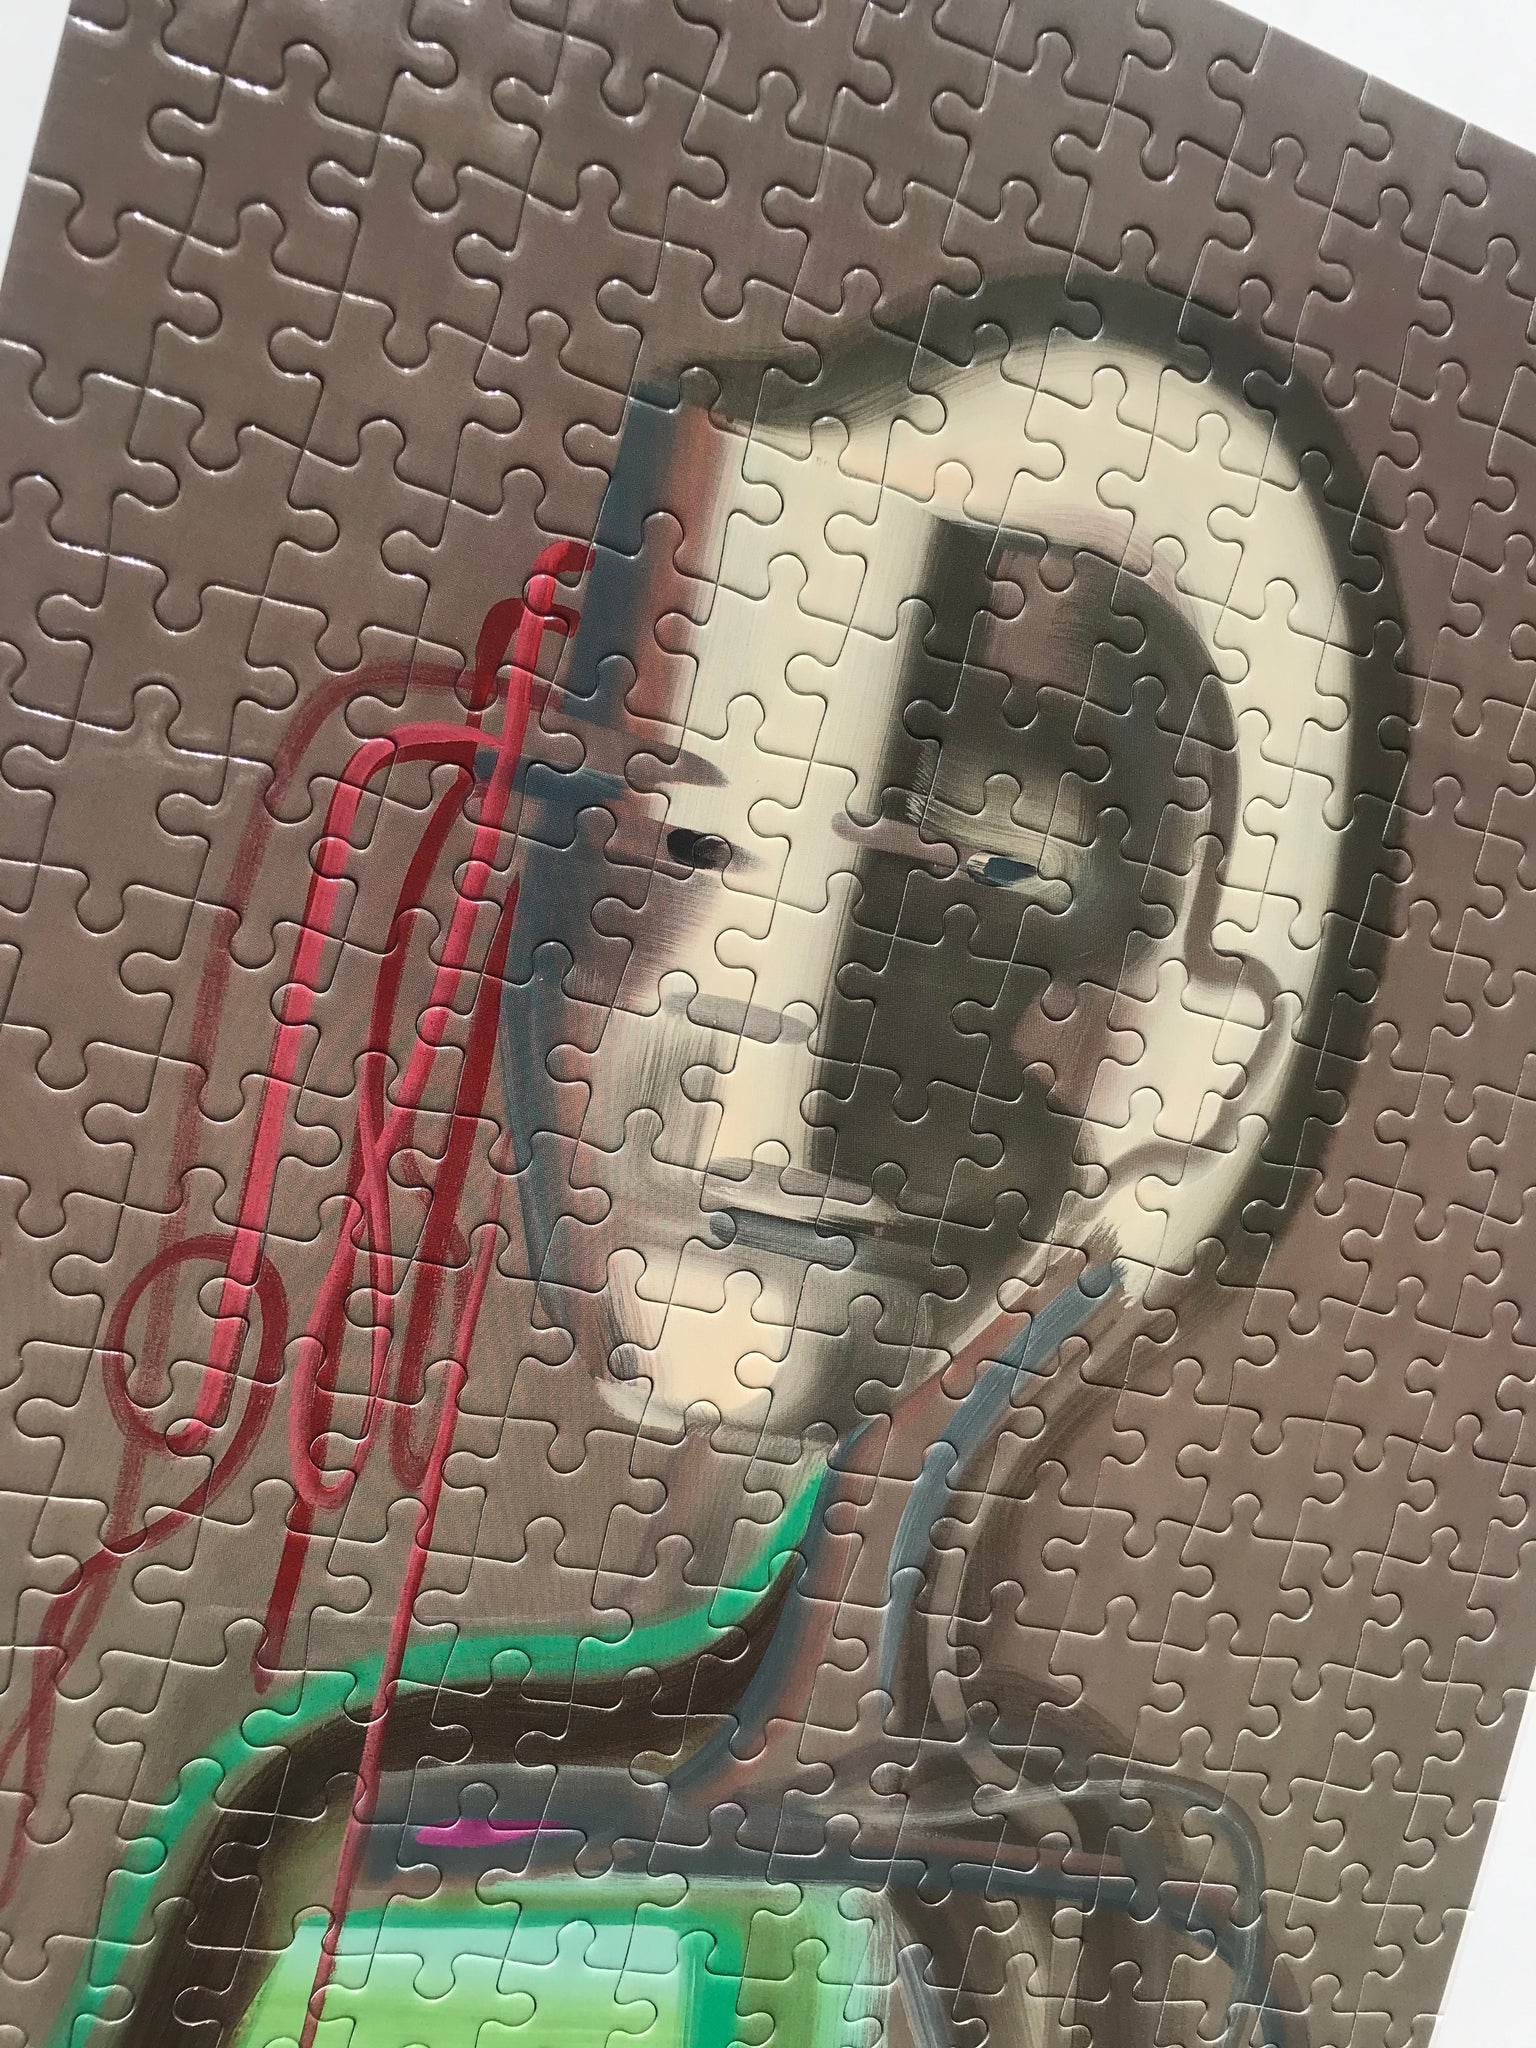 Artist Wanda Koop Collector Edition Jigsaw Puzzle